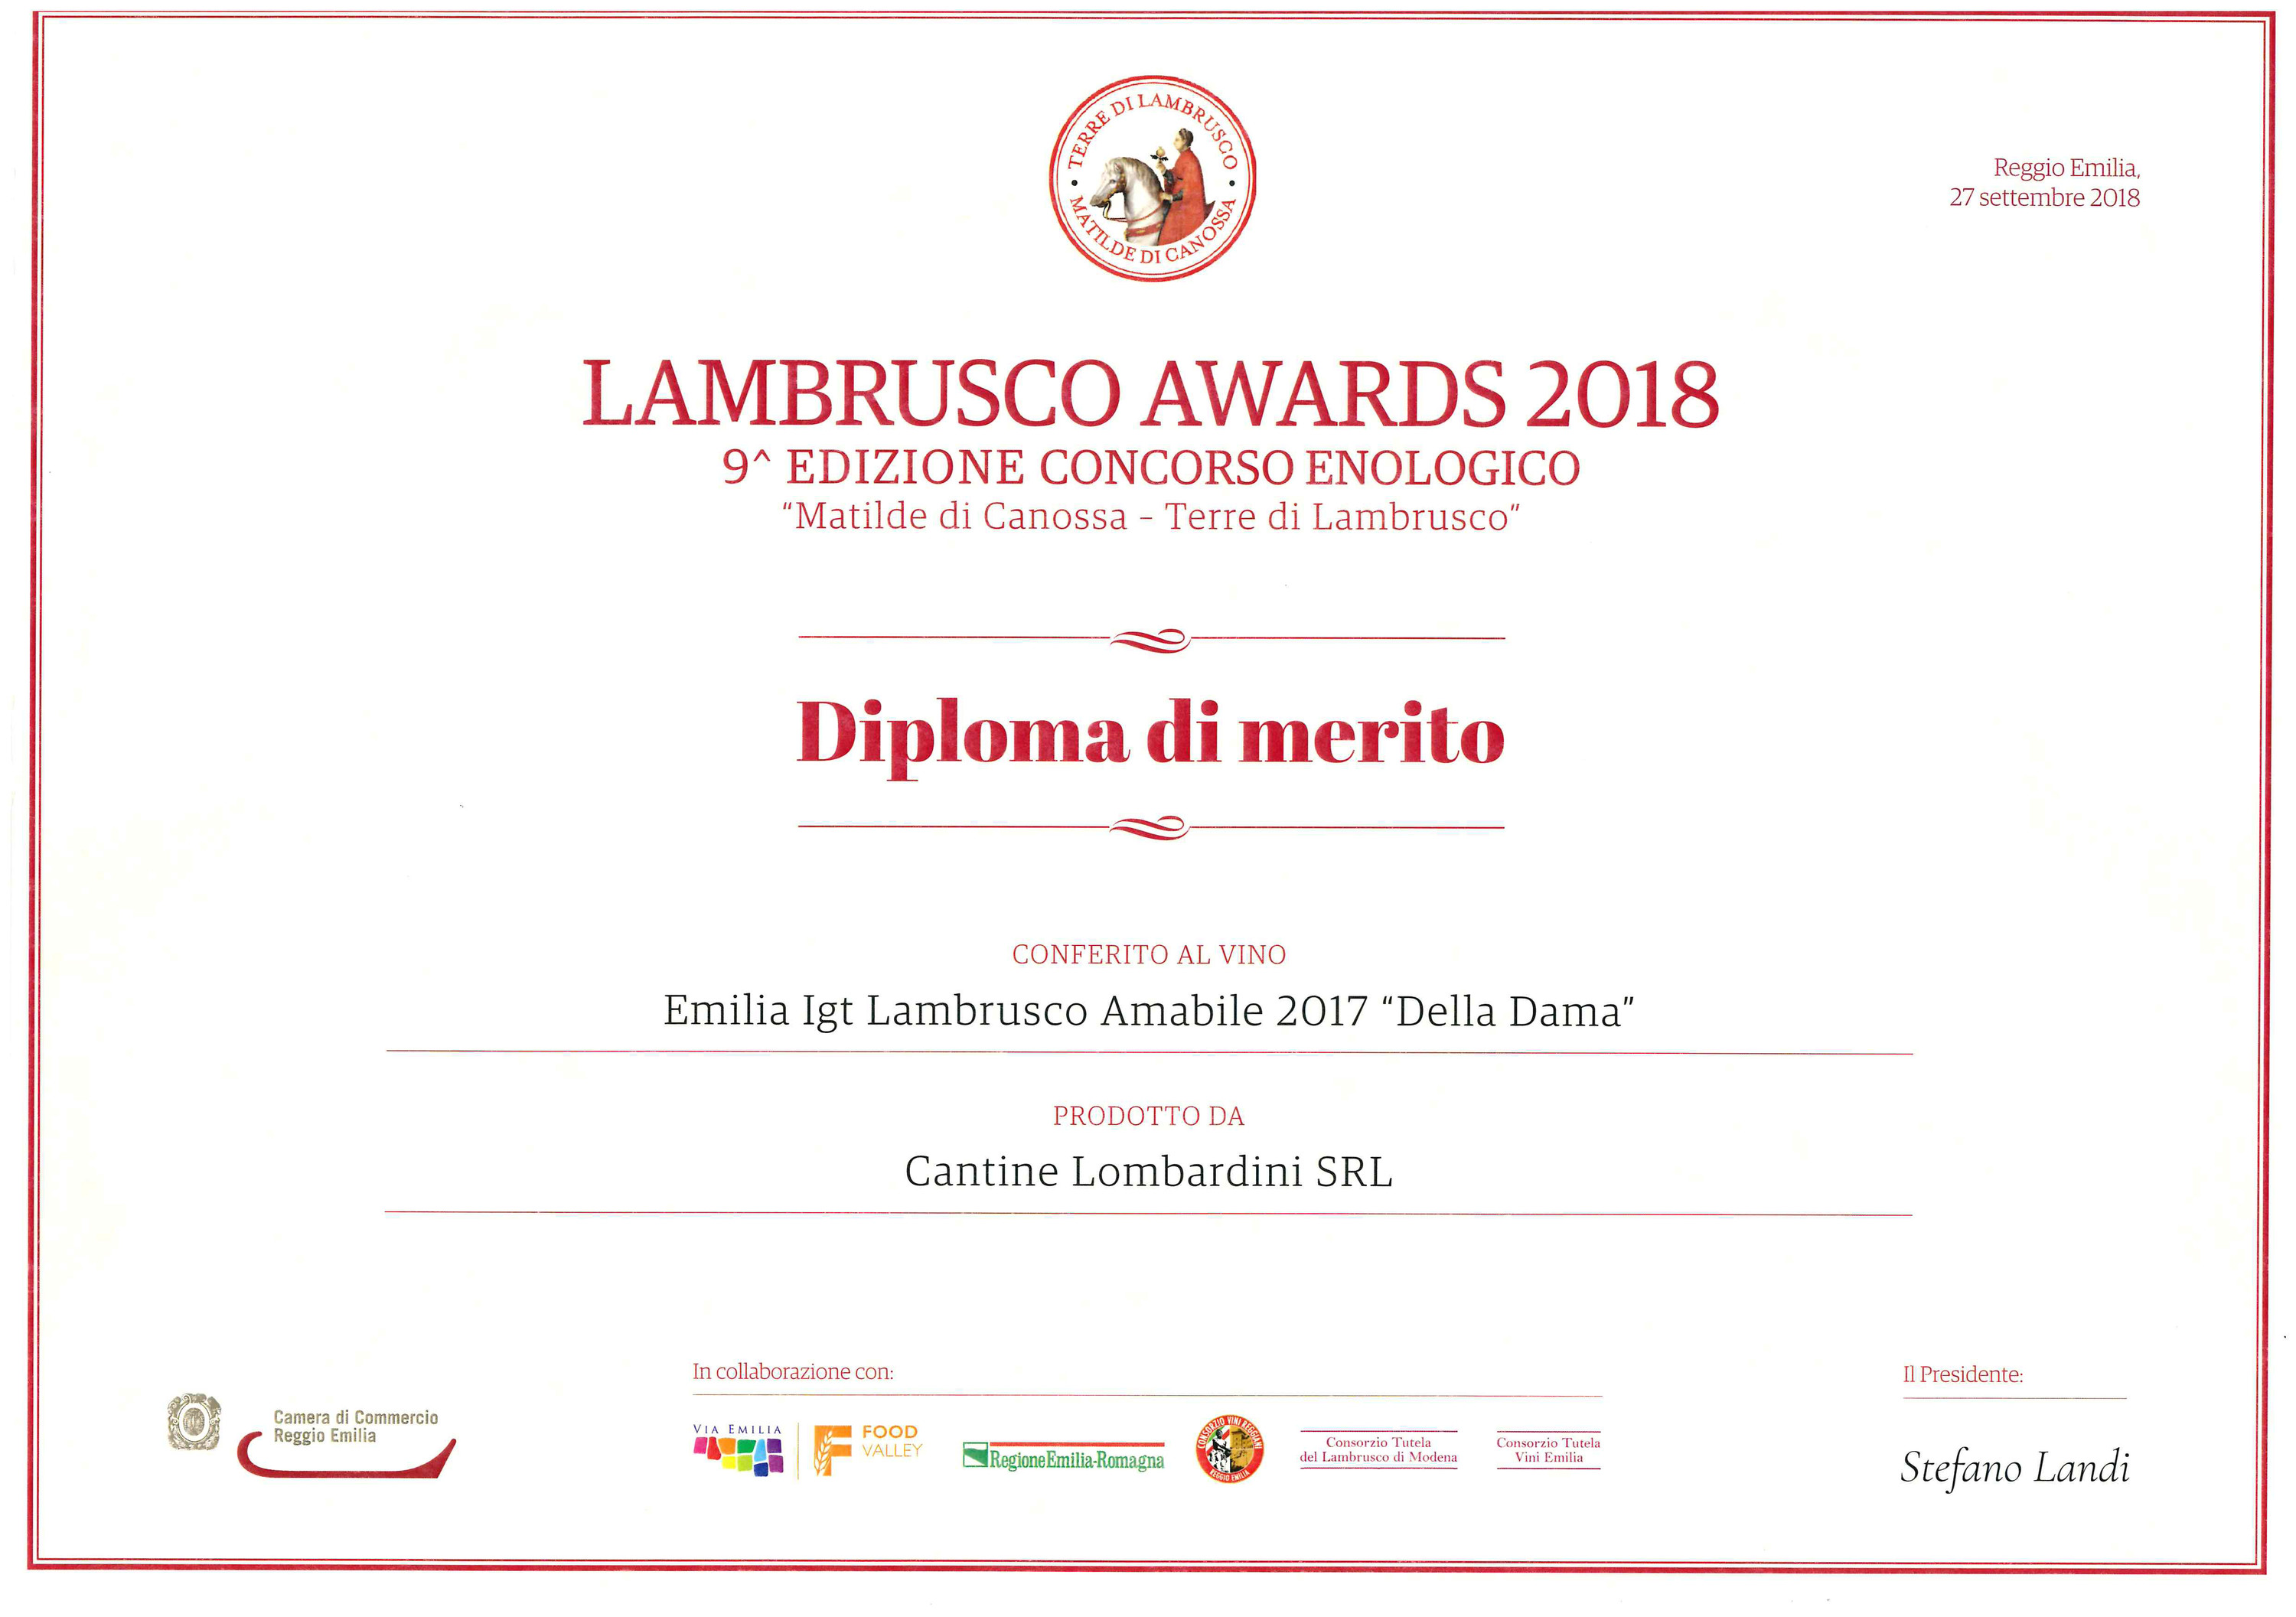 Lambrusco awards 2018.jpg